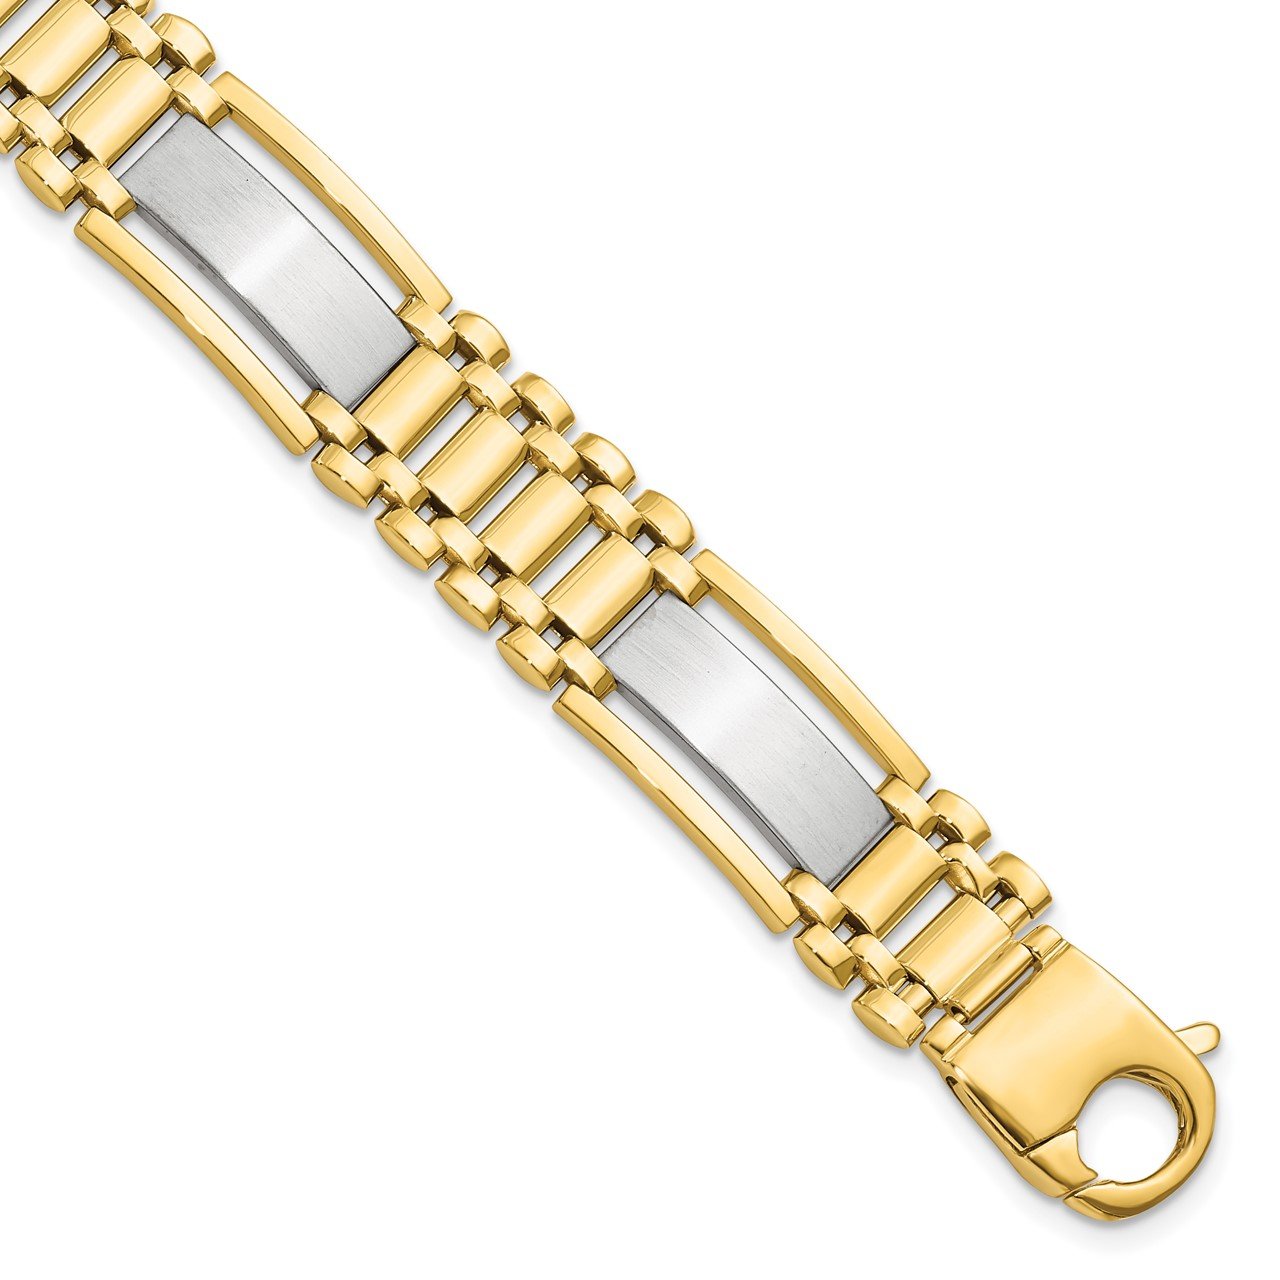 Leslie's 14K Two-tone Polished and Satin Men's Bracelet